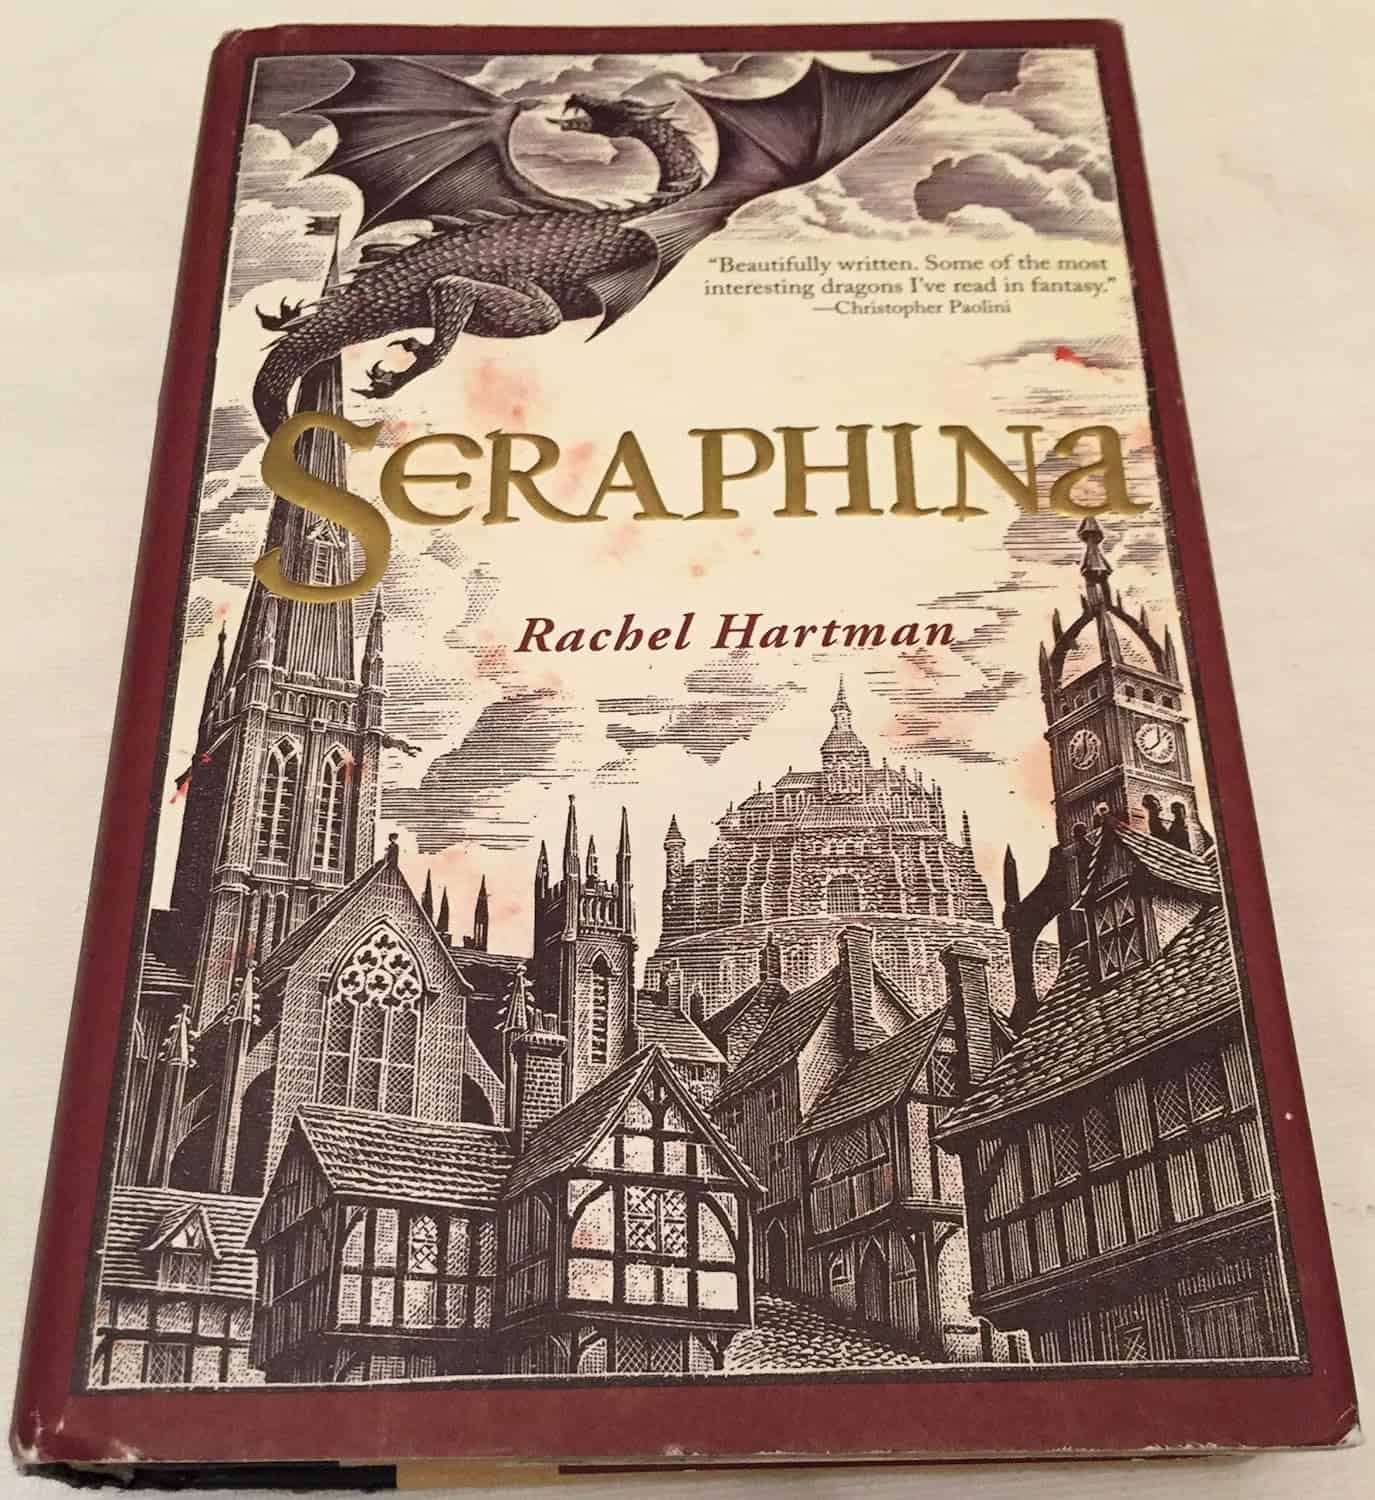 Seraphina, by Rachel Hartman